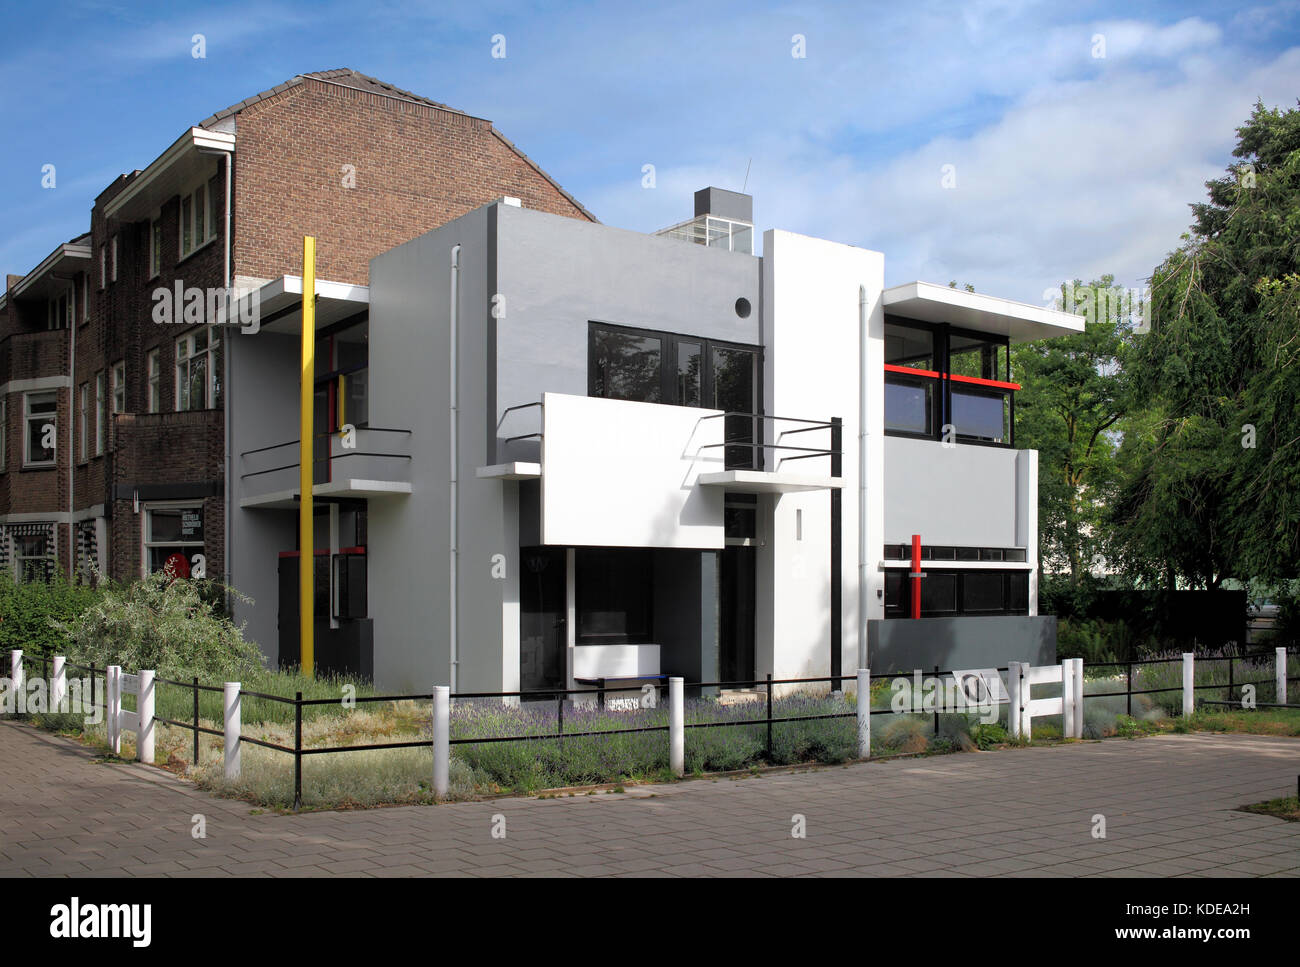 La maison Schroeder, Utrecht, Pays-Bas. conçue par Gerrit Thomas Rietveld. architecture moderne d'avant-garde - construit en 1924. Banque D'Images